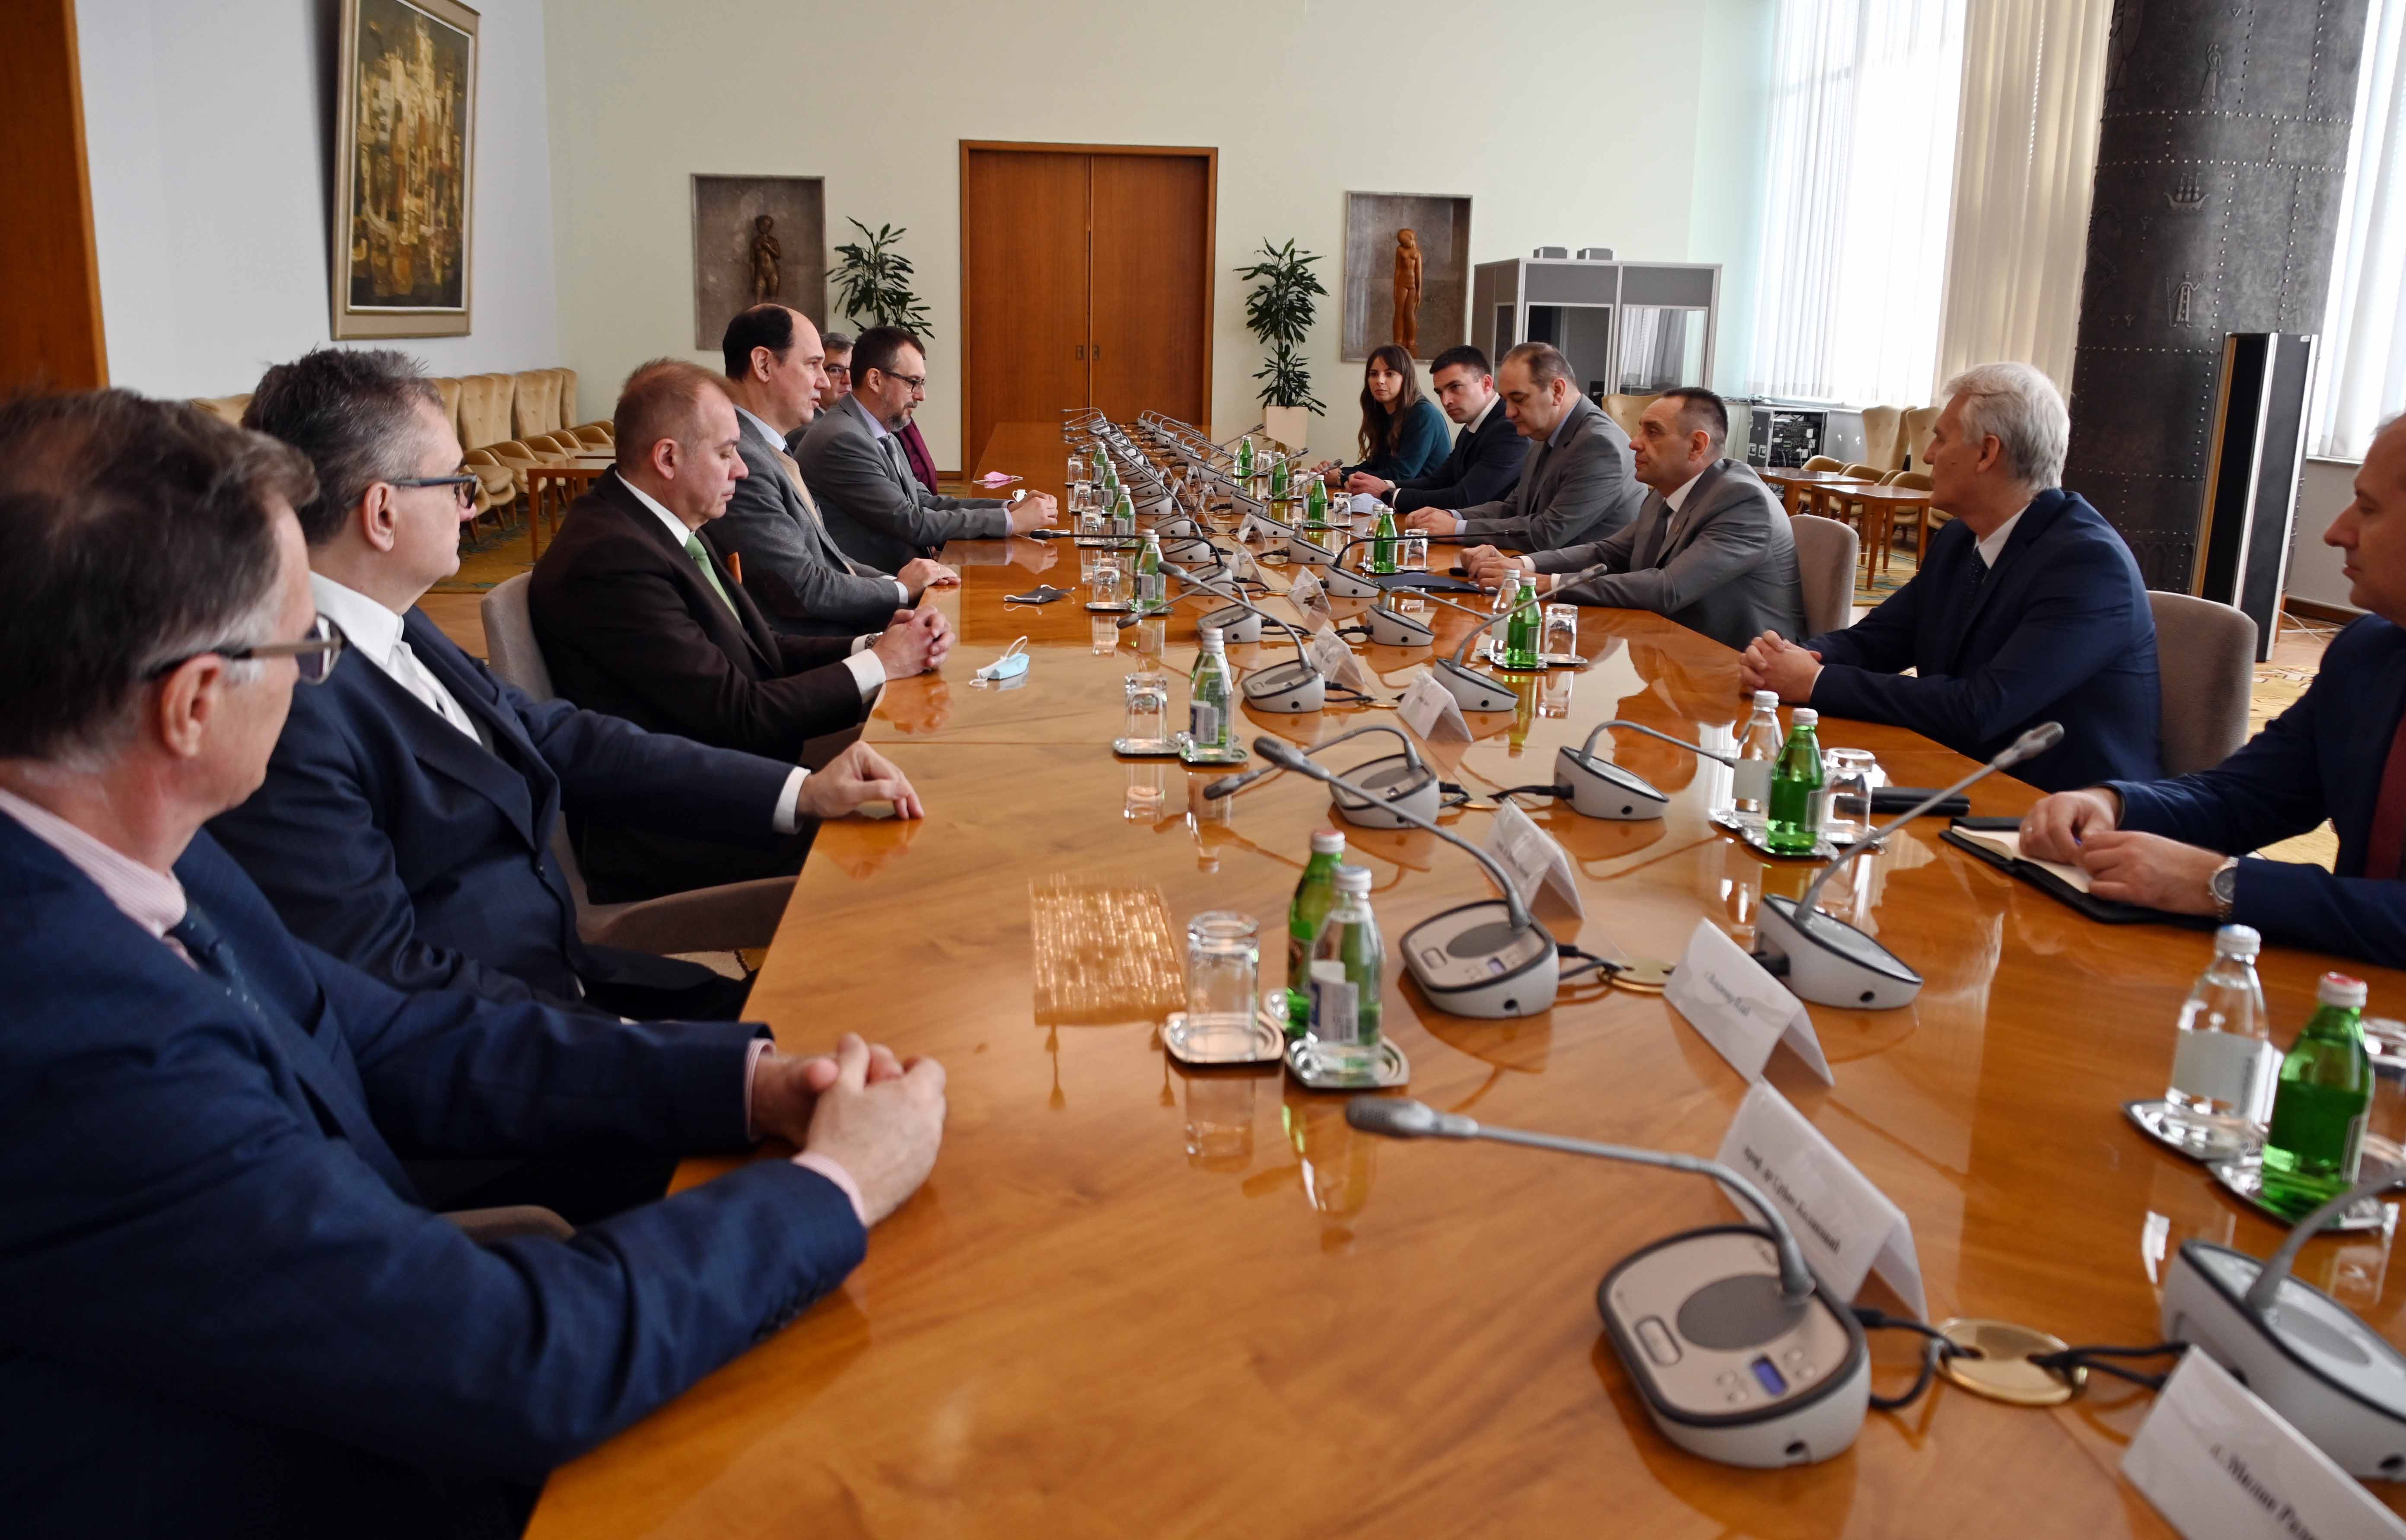 Министар Александар Вулин потписао је данас са деканима седам вискообразовних установа у Србији Споразум о пословној сарадњи